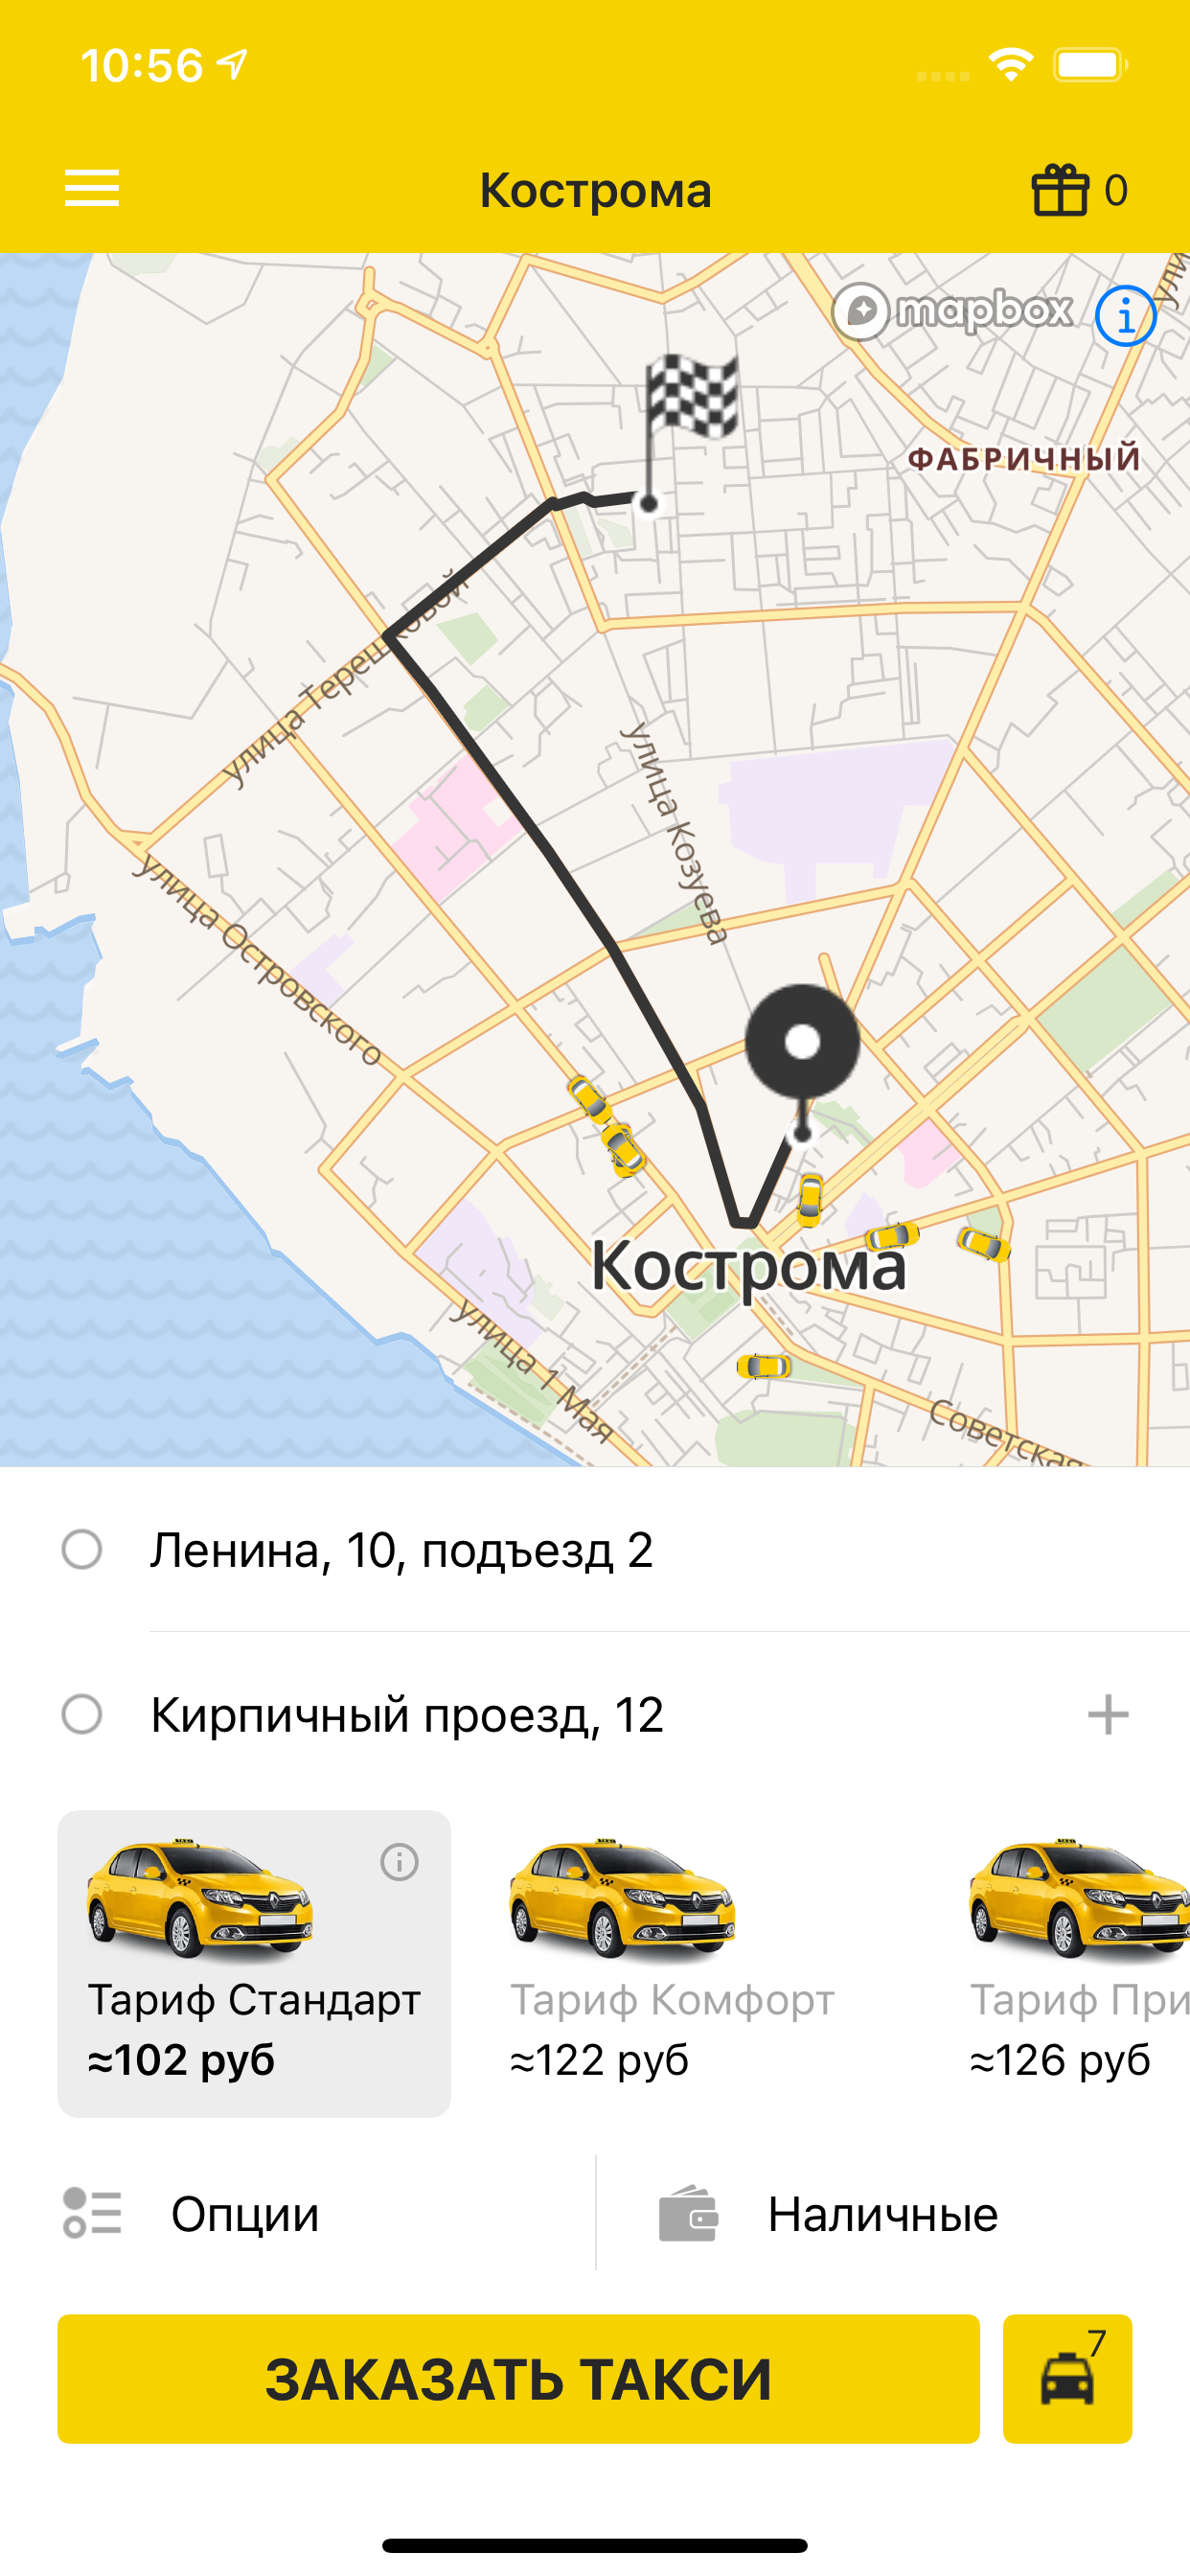 Изображение: Тройка Кострома: заказ такси